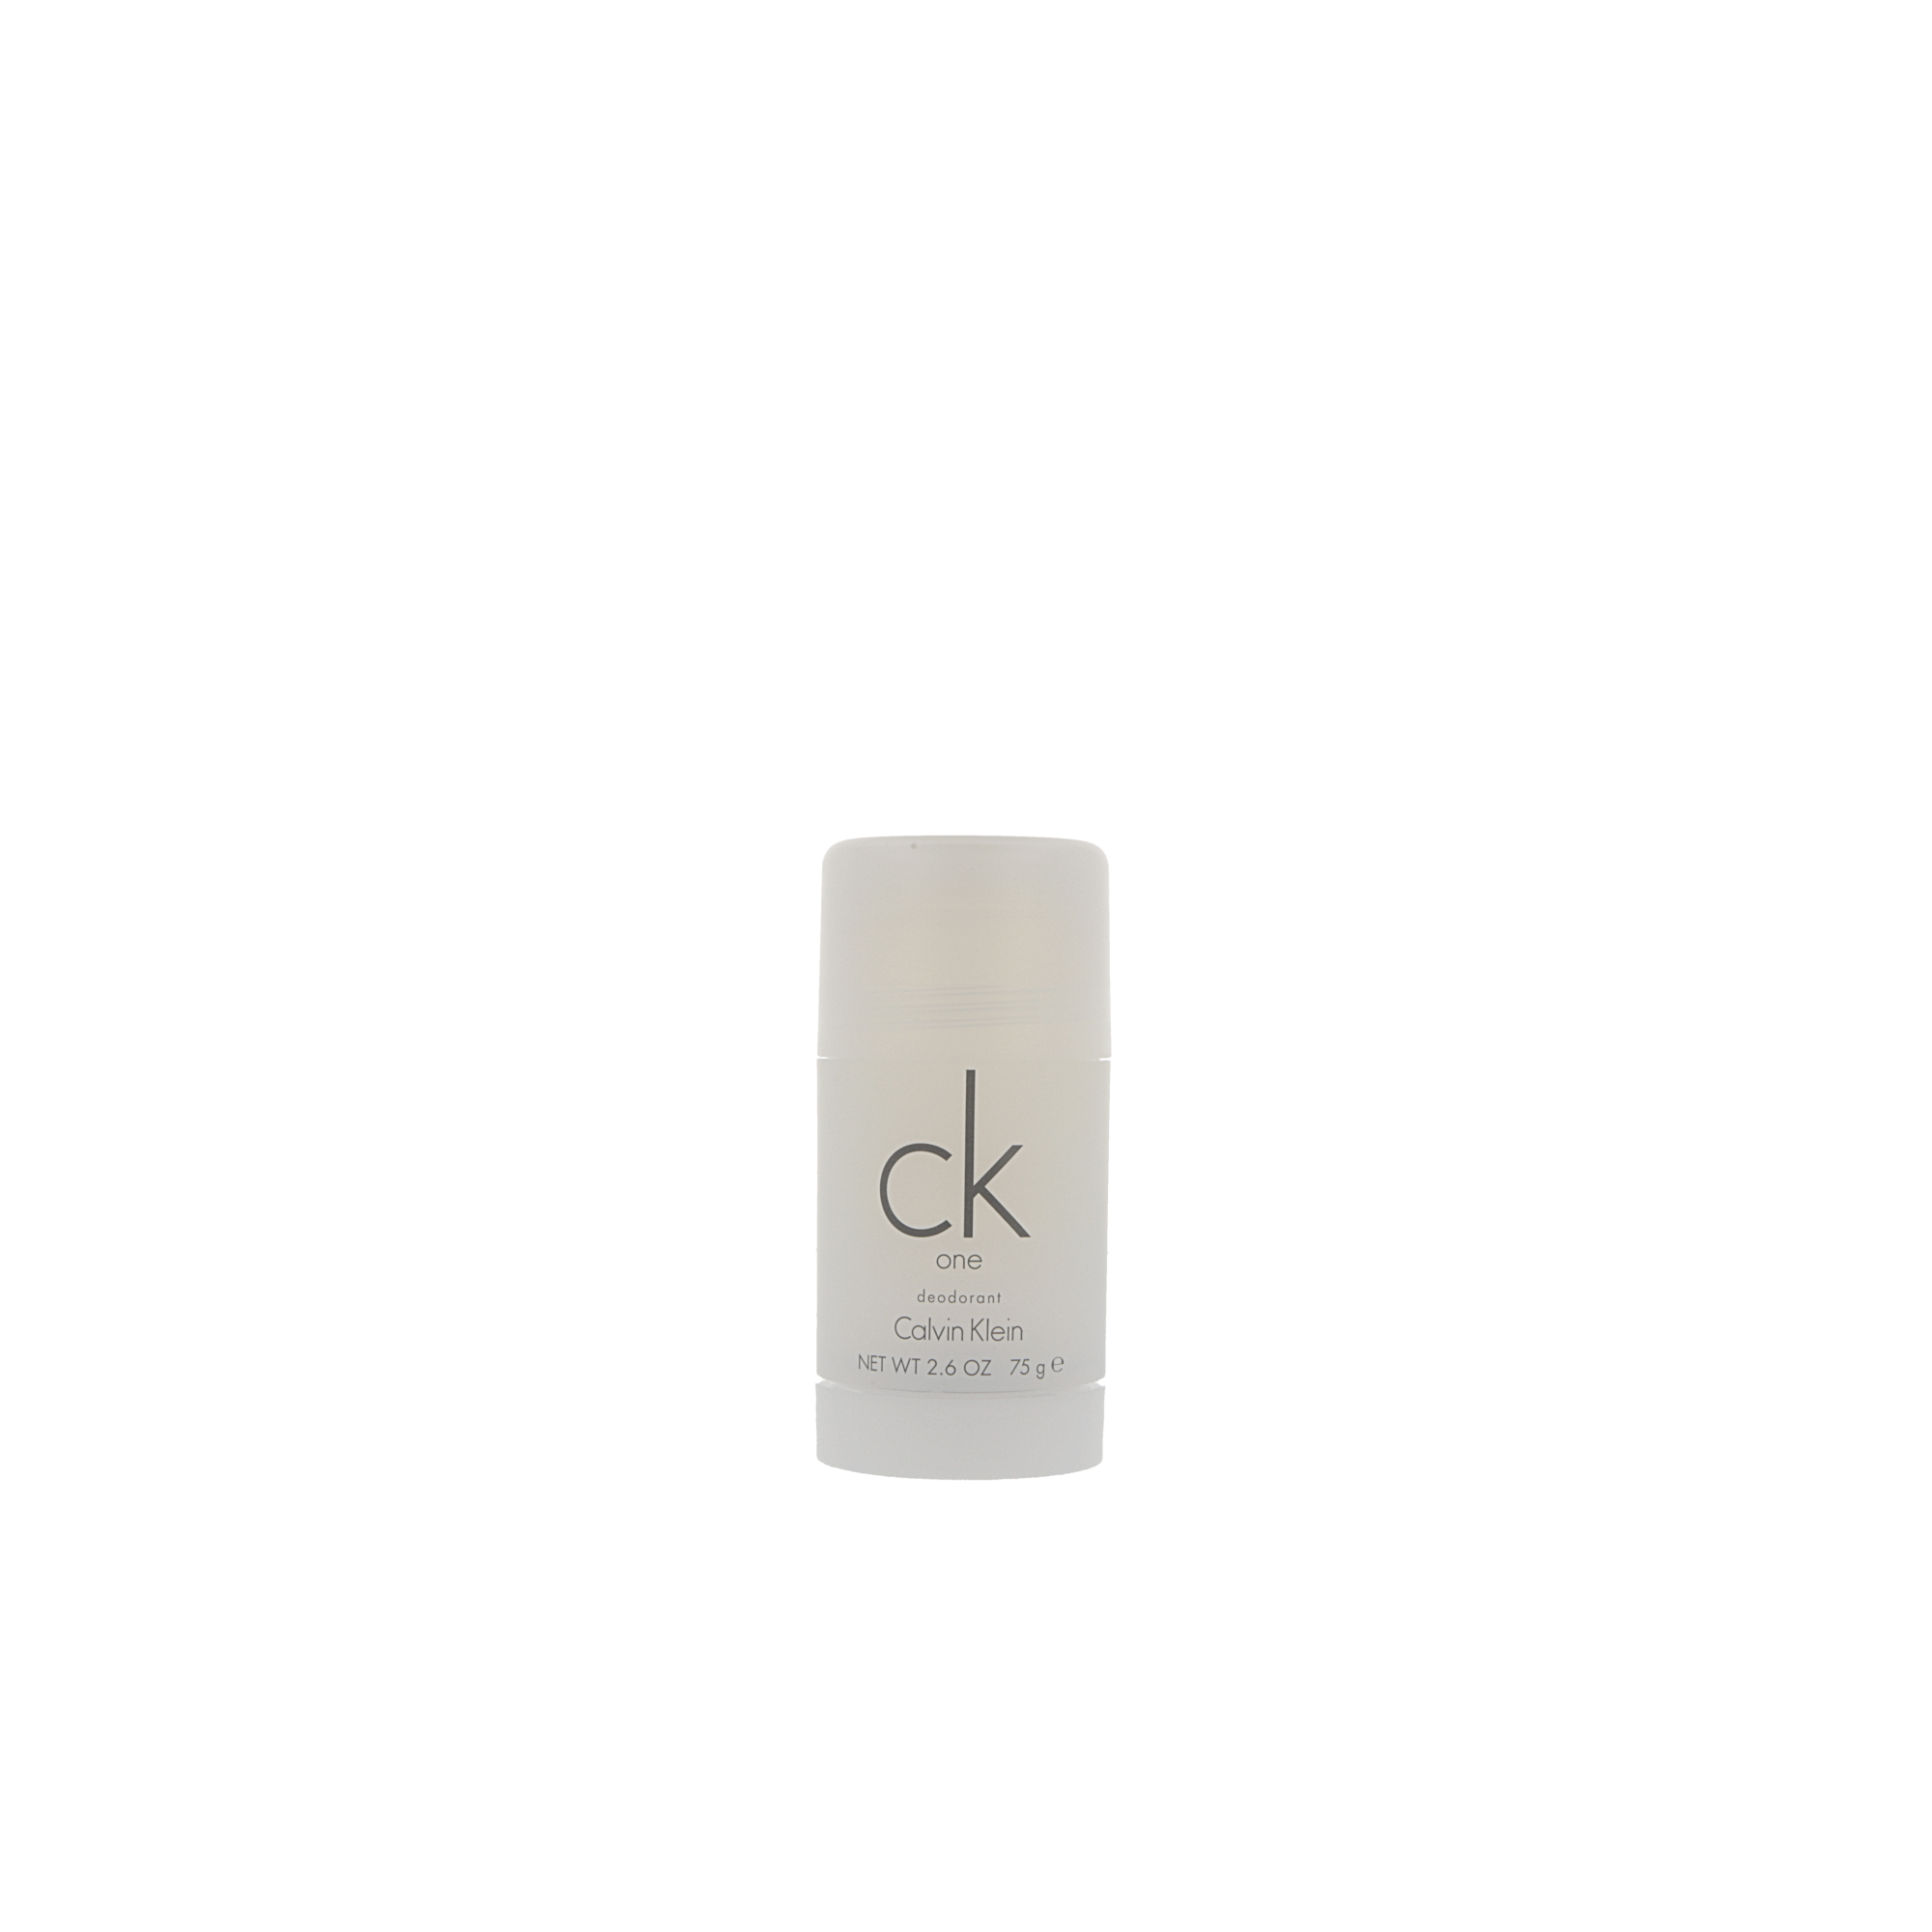 CK One dezodorant sztyft 75g